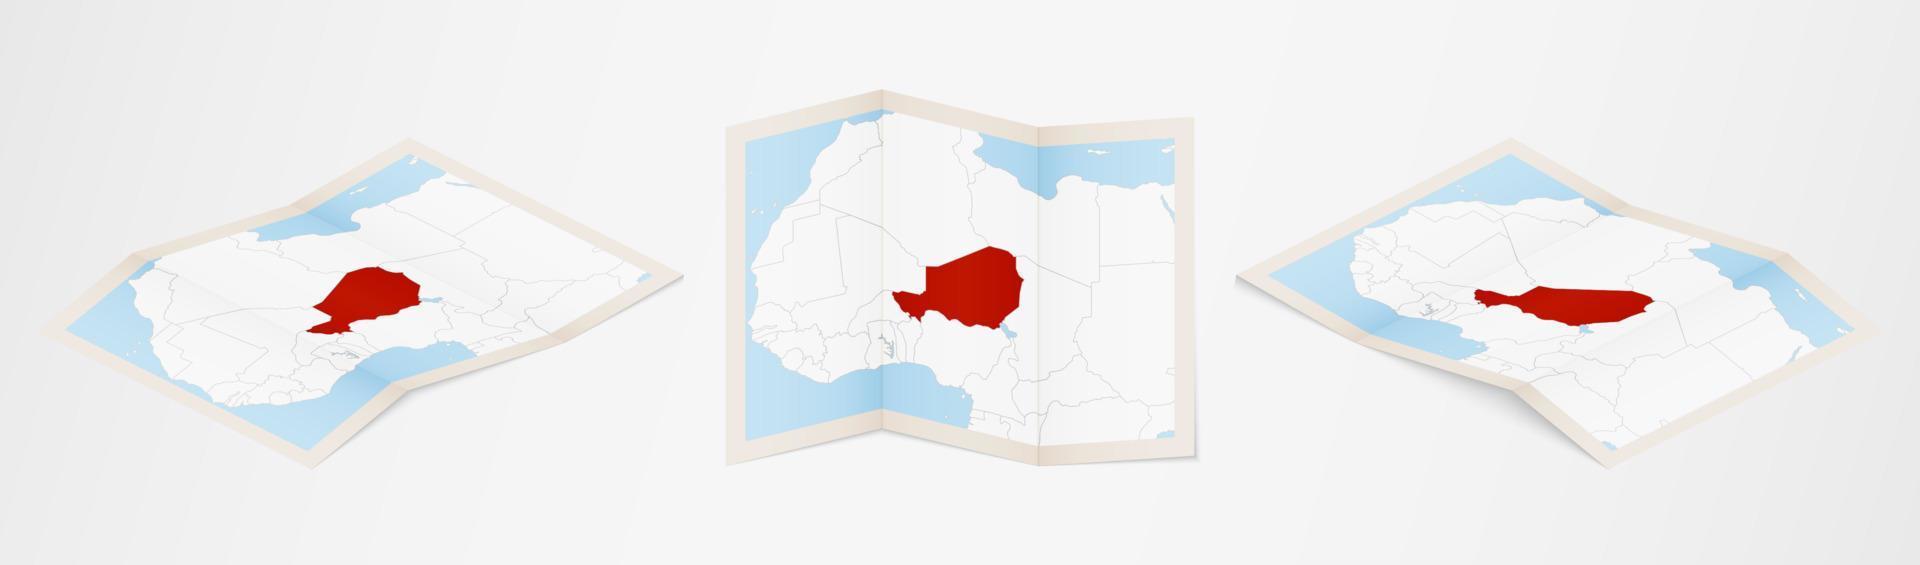 Faltkarte von Niger in drei verschiedenen Versionen. vektor